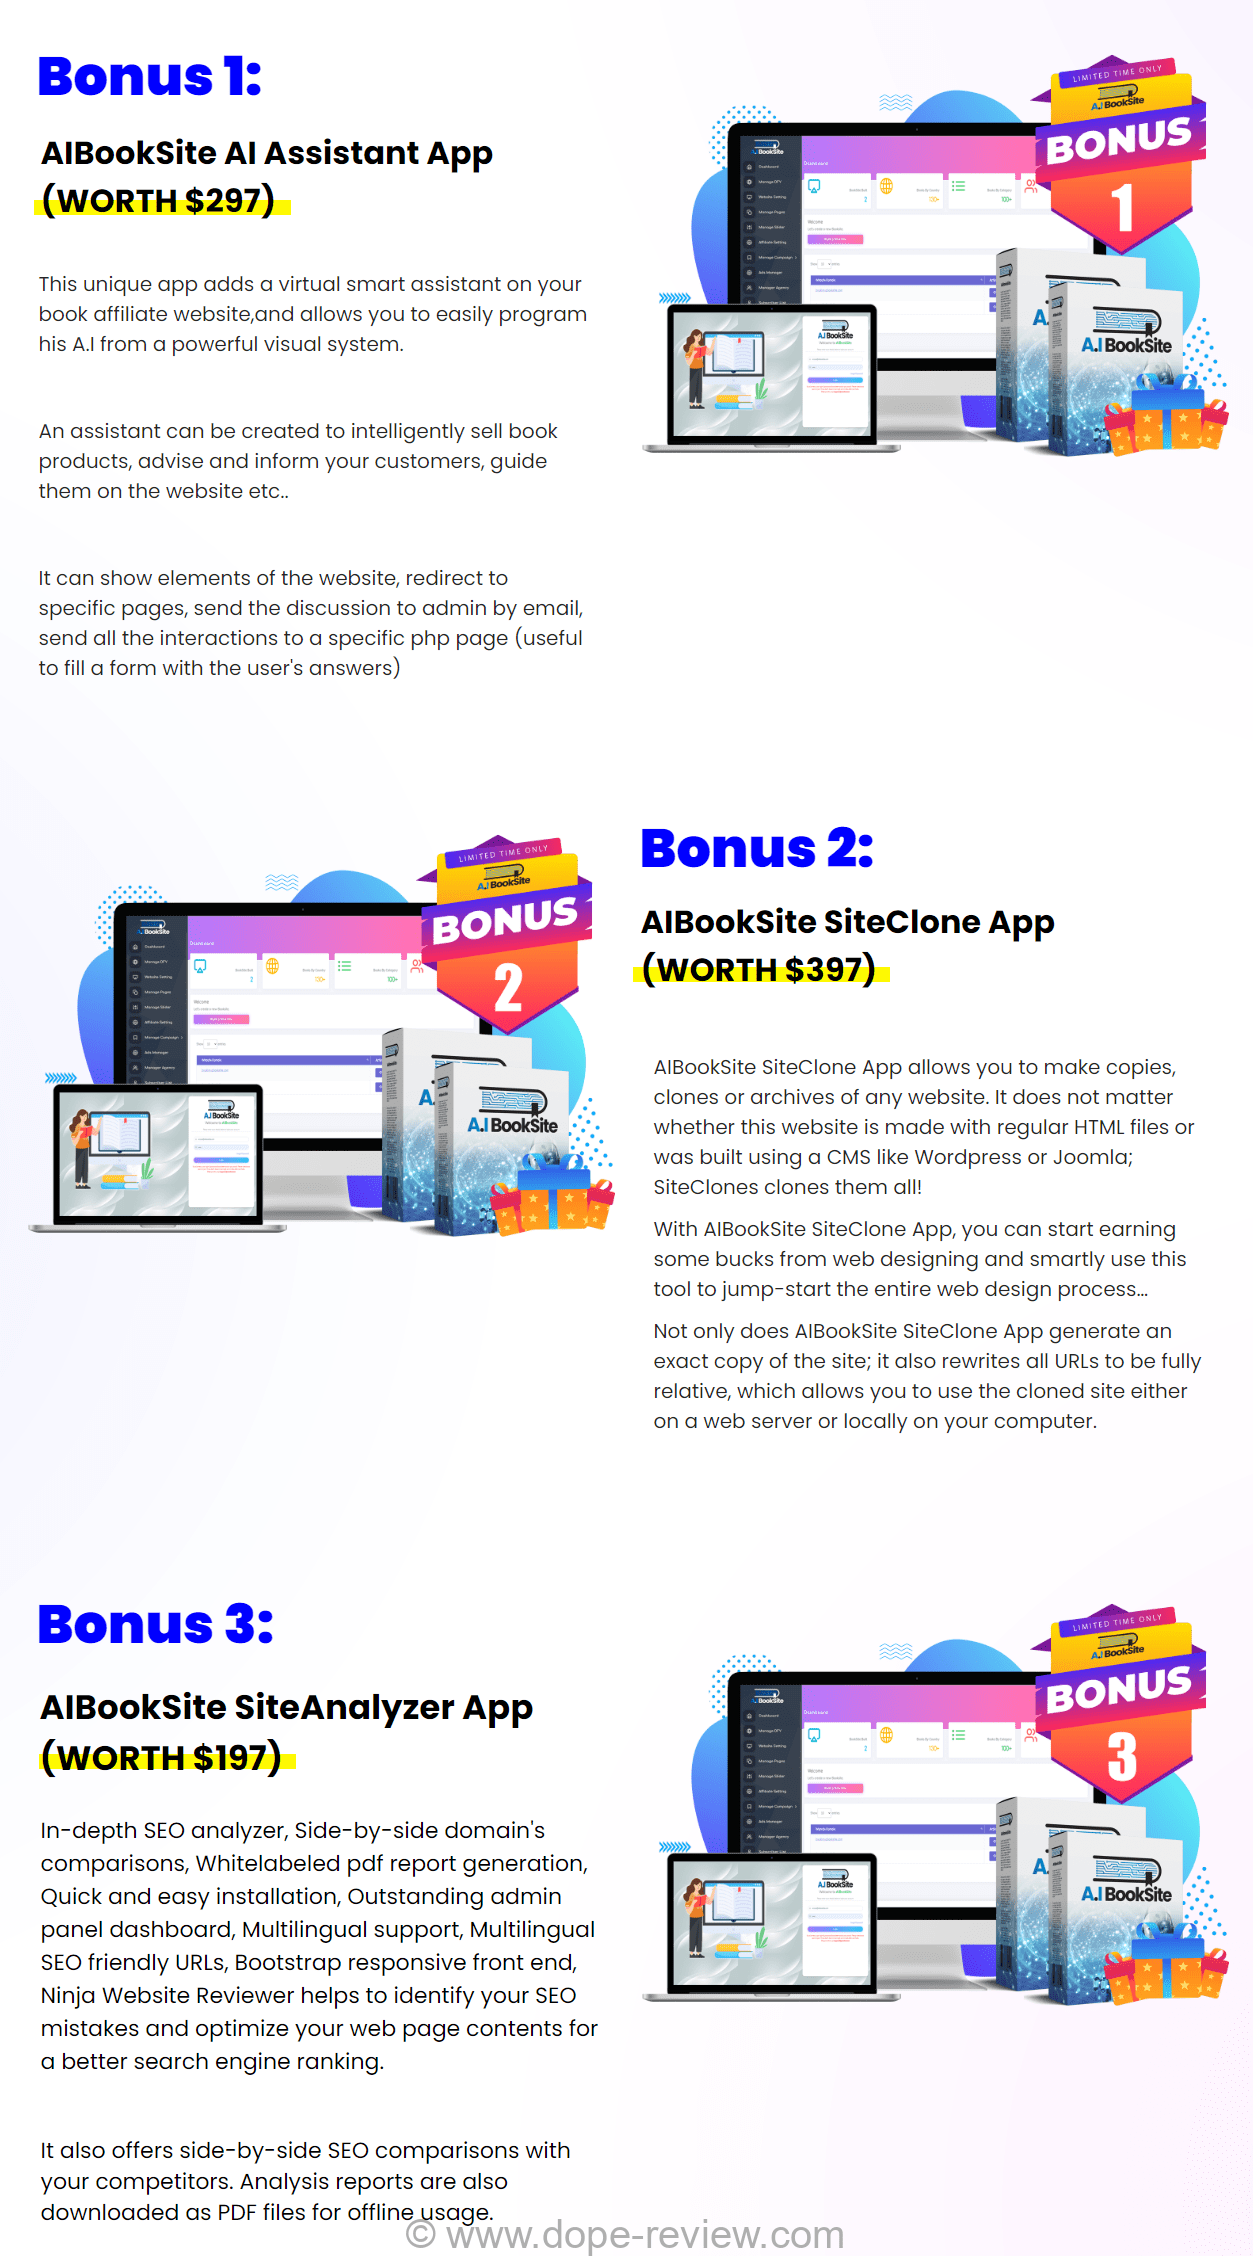 AIBookSite Bonus